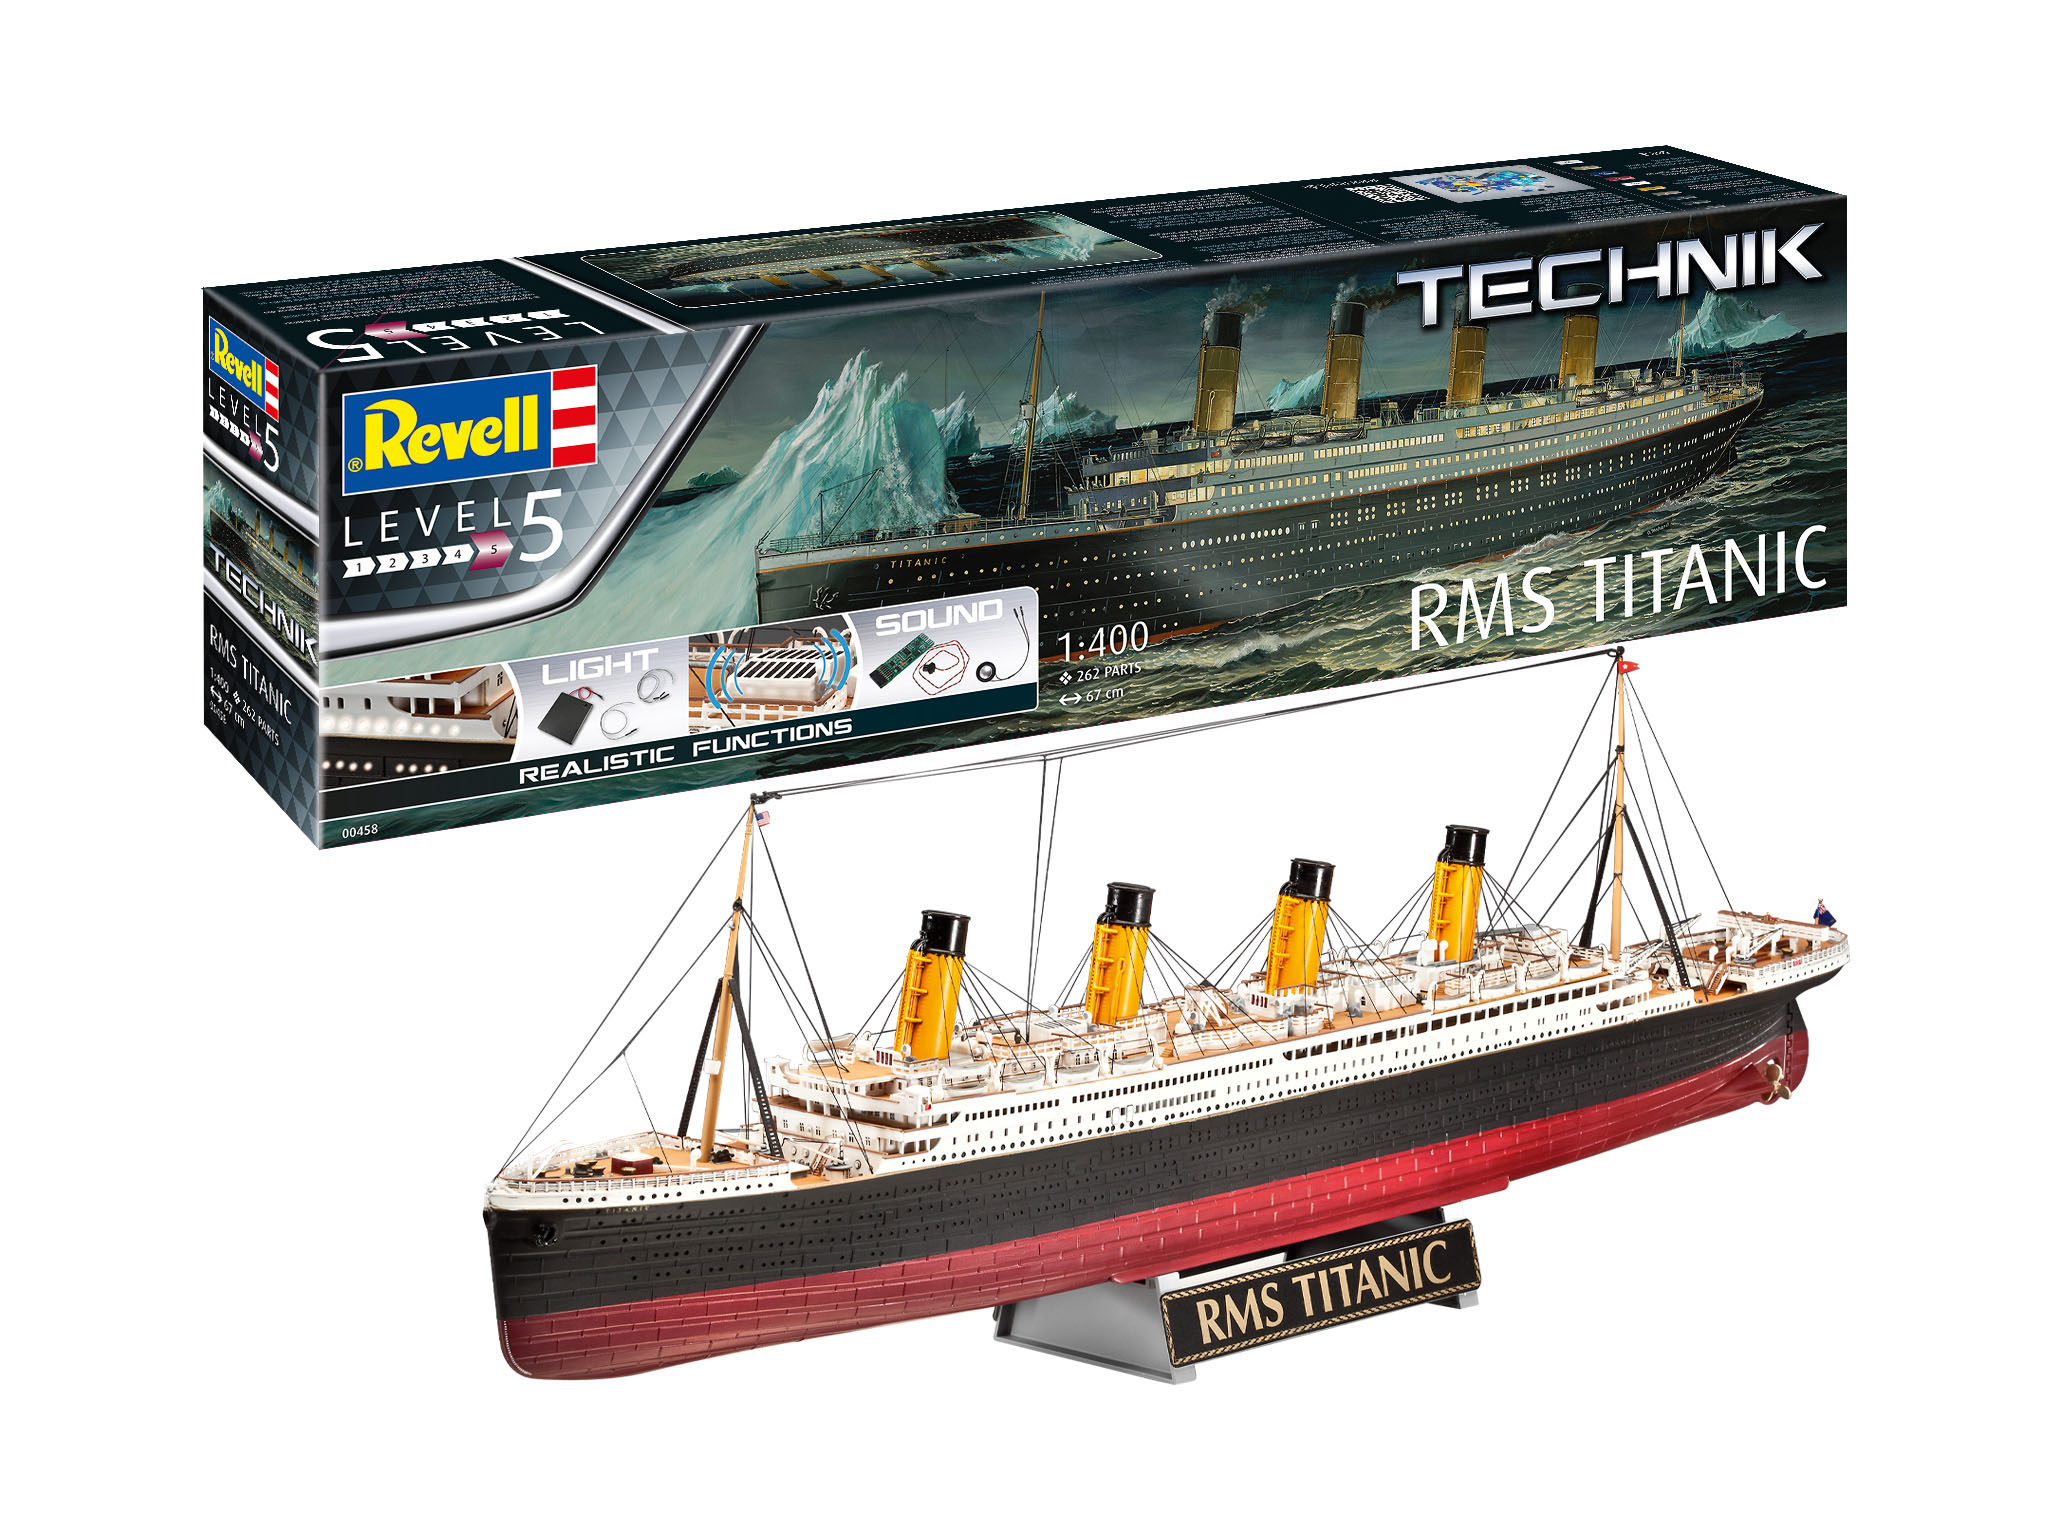 Revell RMS Titanic Technik in 1:400 bouwpakket met geluid en verlichting